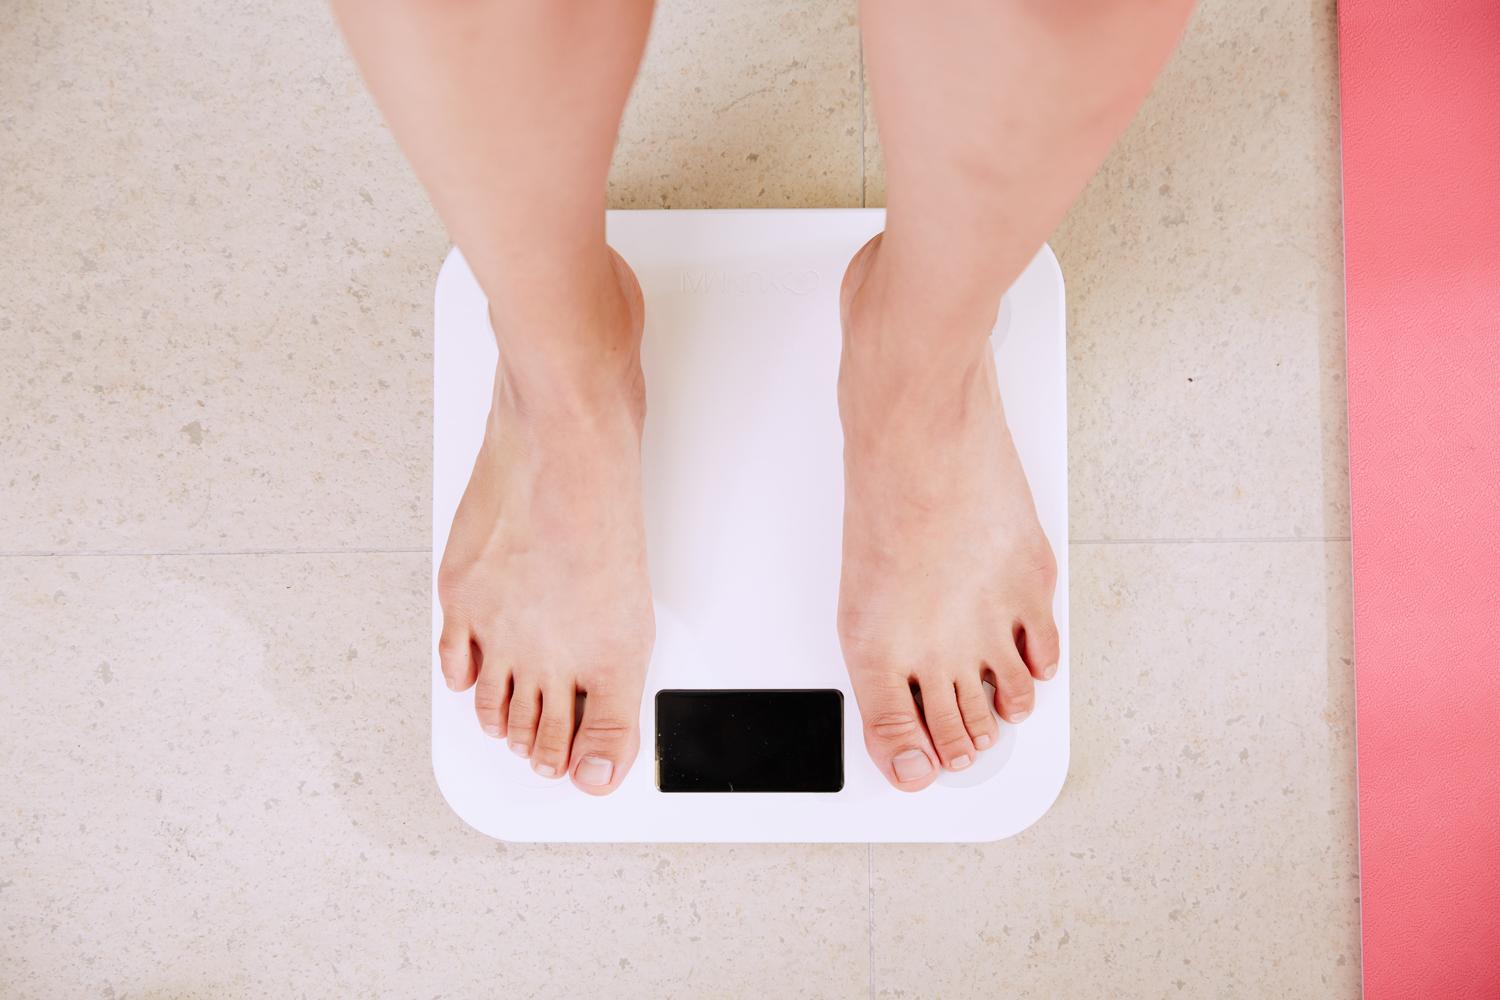 Trebuie sa facem exercitii pentru a pierde in greutate? – Tot ce trebuie sa stii